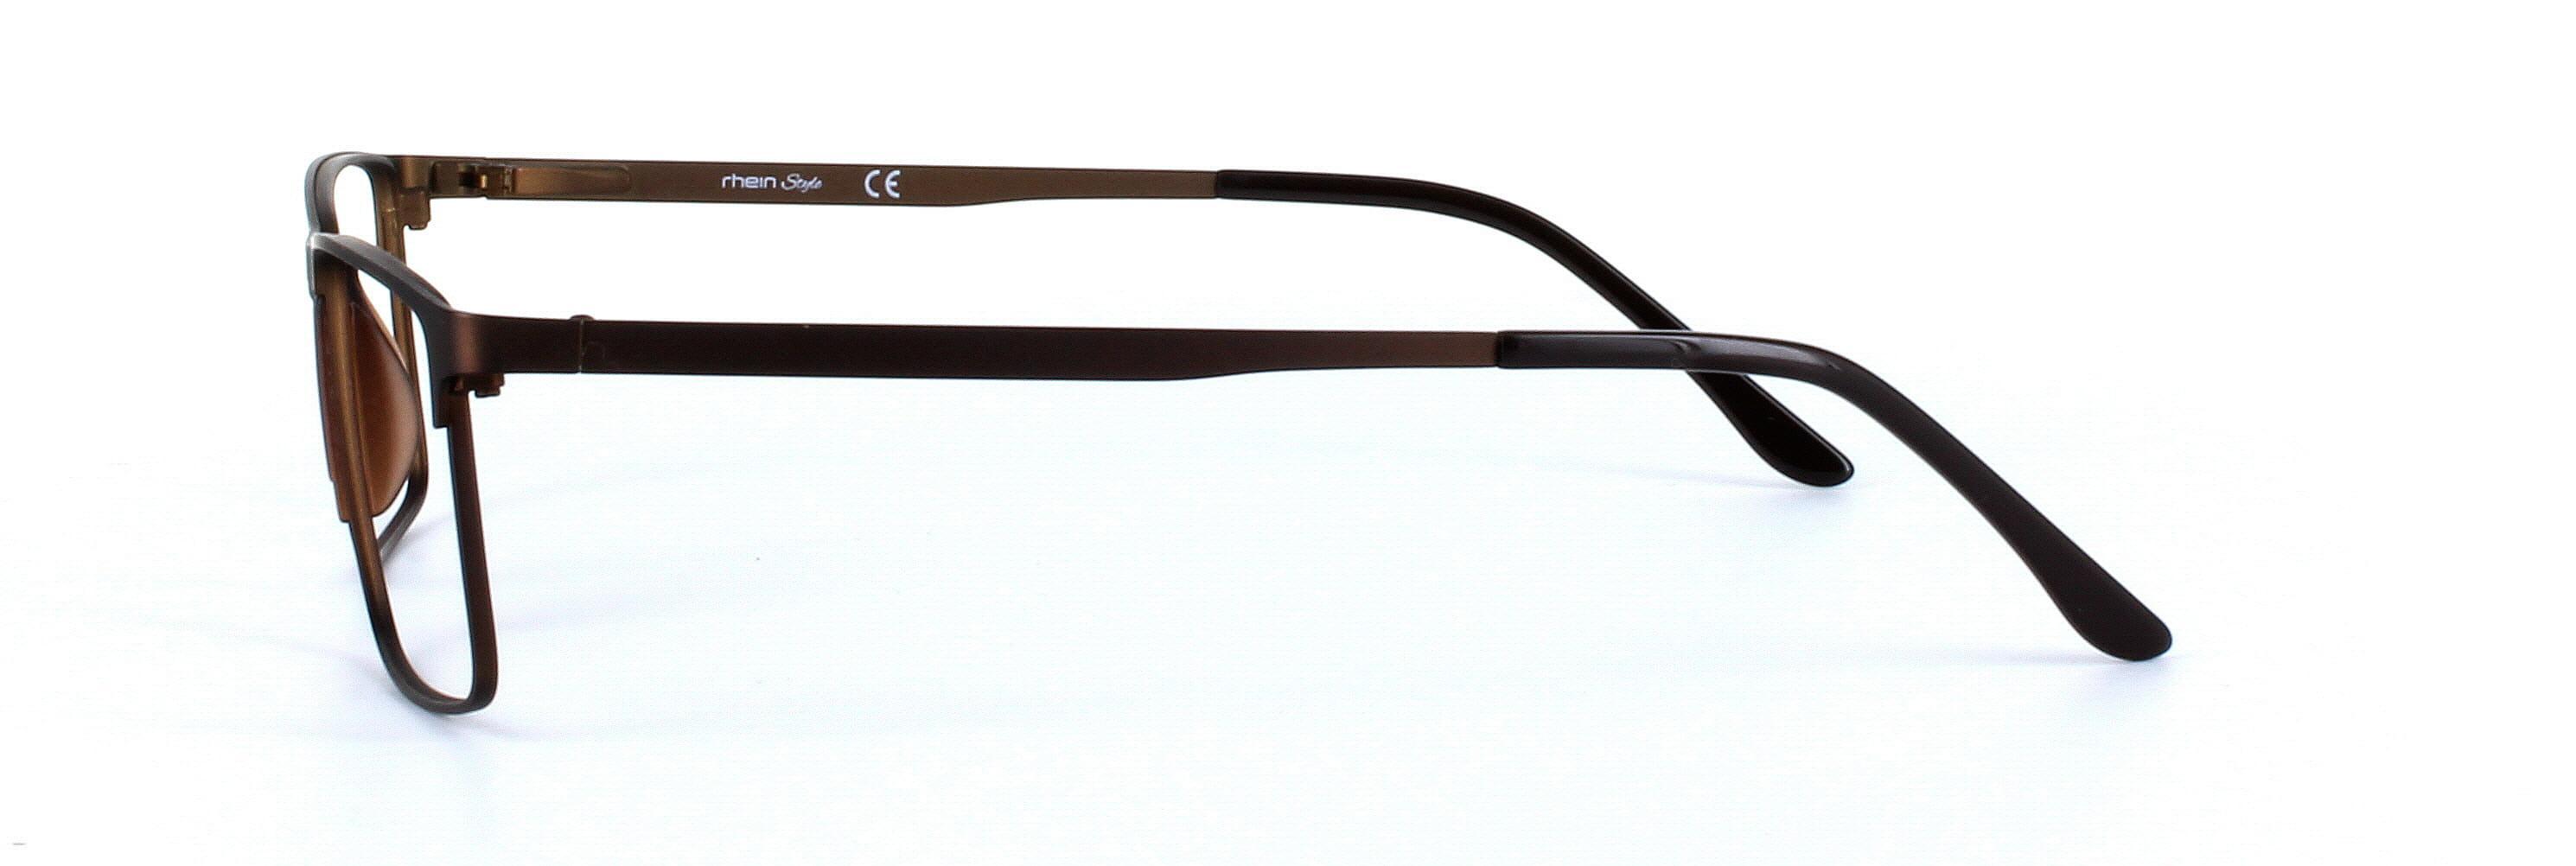 Burnaby Bronze Full Rim Rectangular Metal Glasses - Image View 2